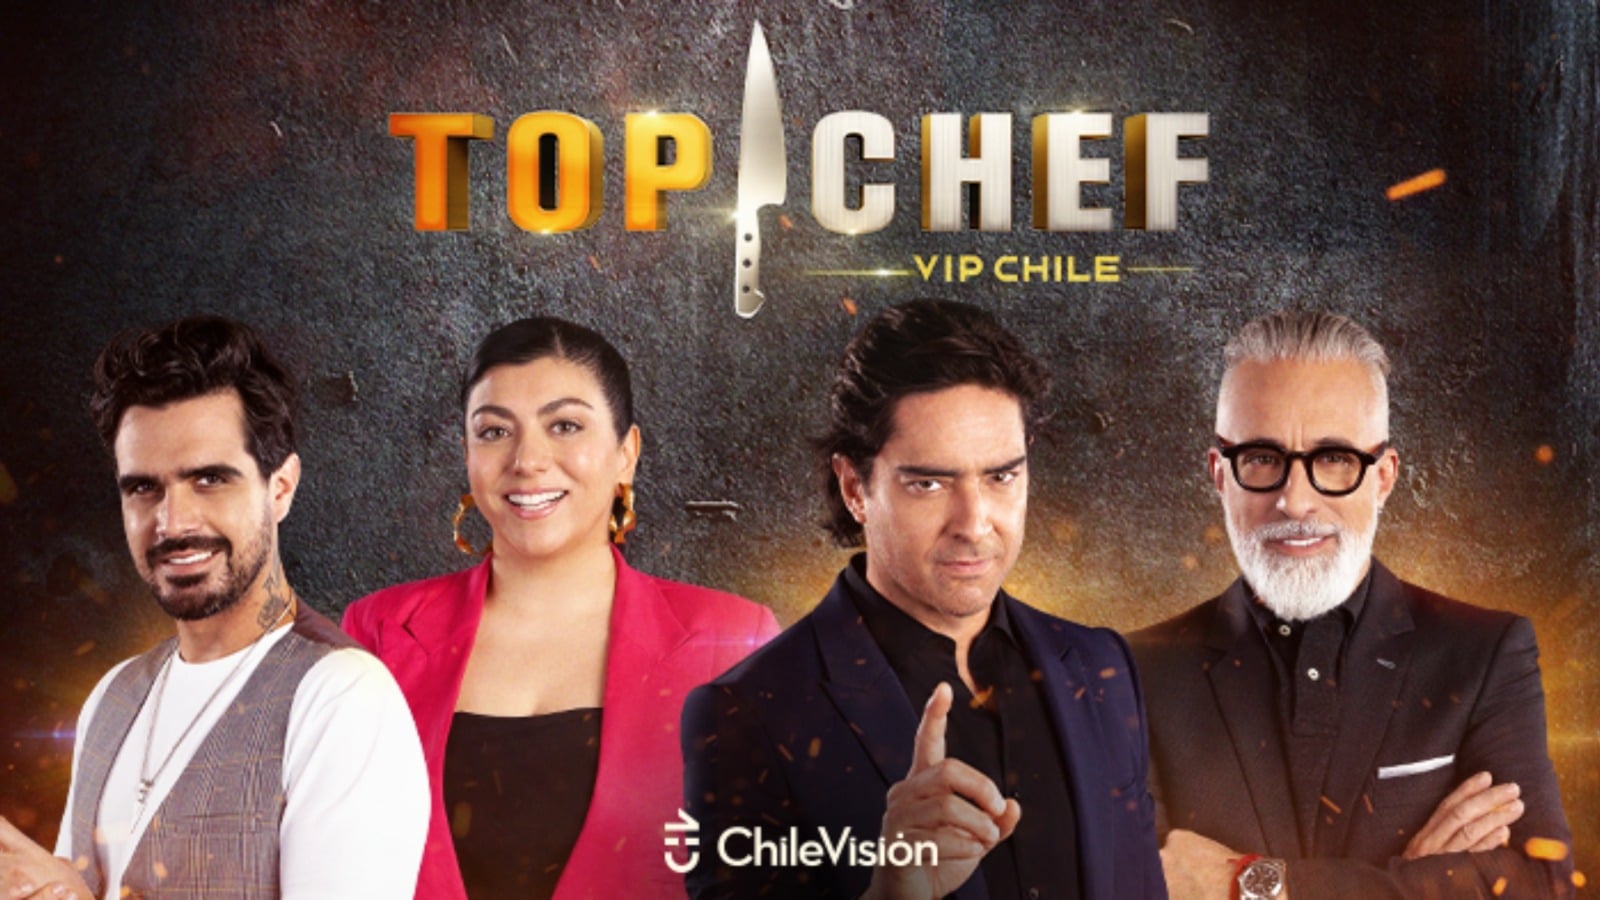 Hanno rivelato chi è stato appena eliminato da Top Chef VIP Cile: non è ancora andato in onda in televisione